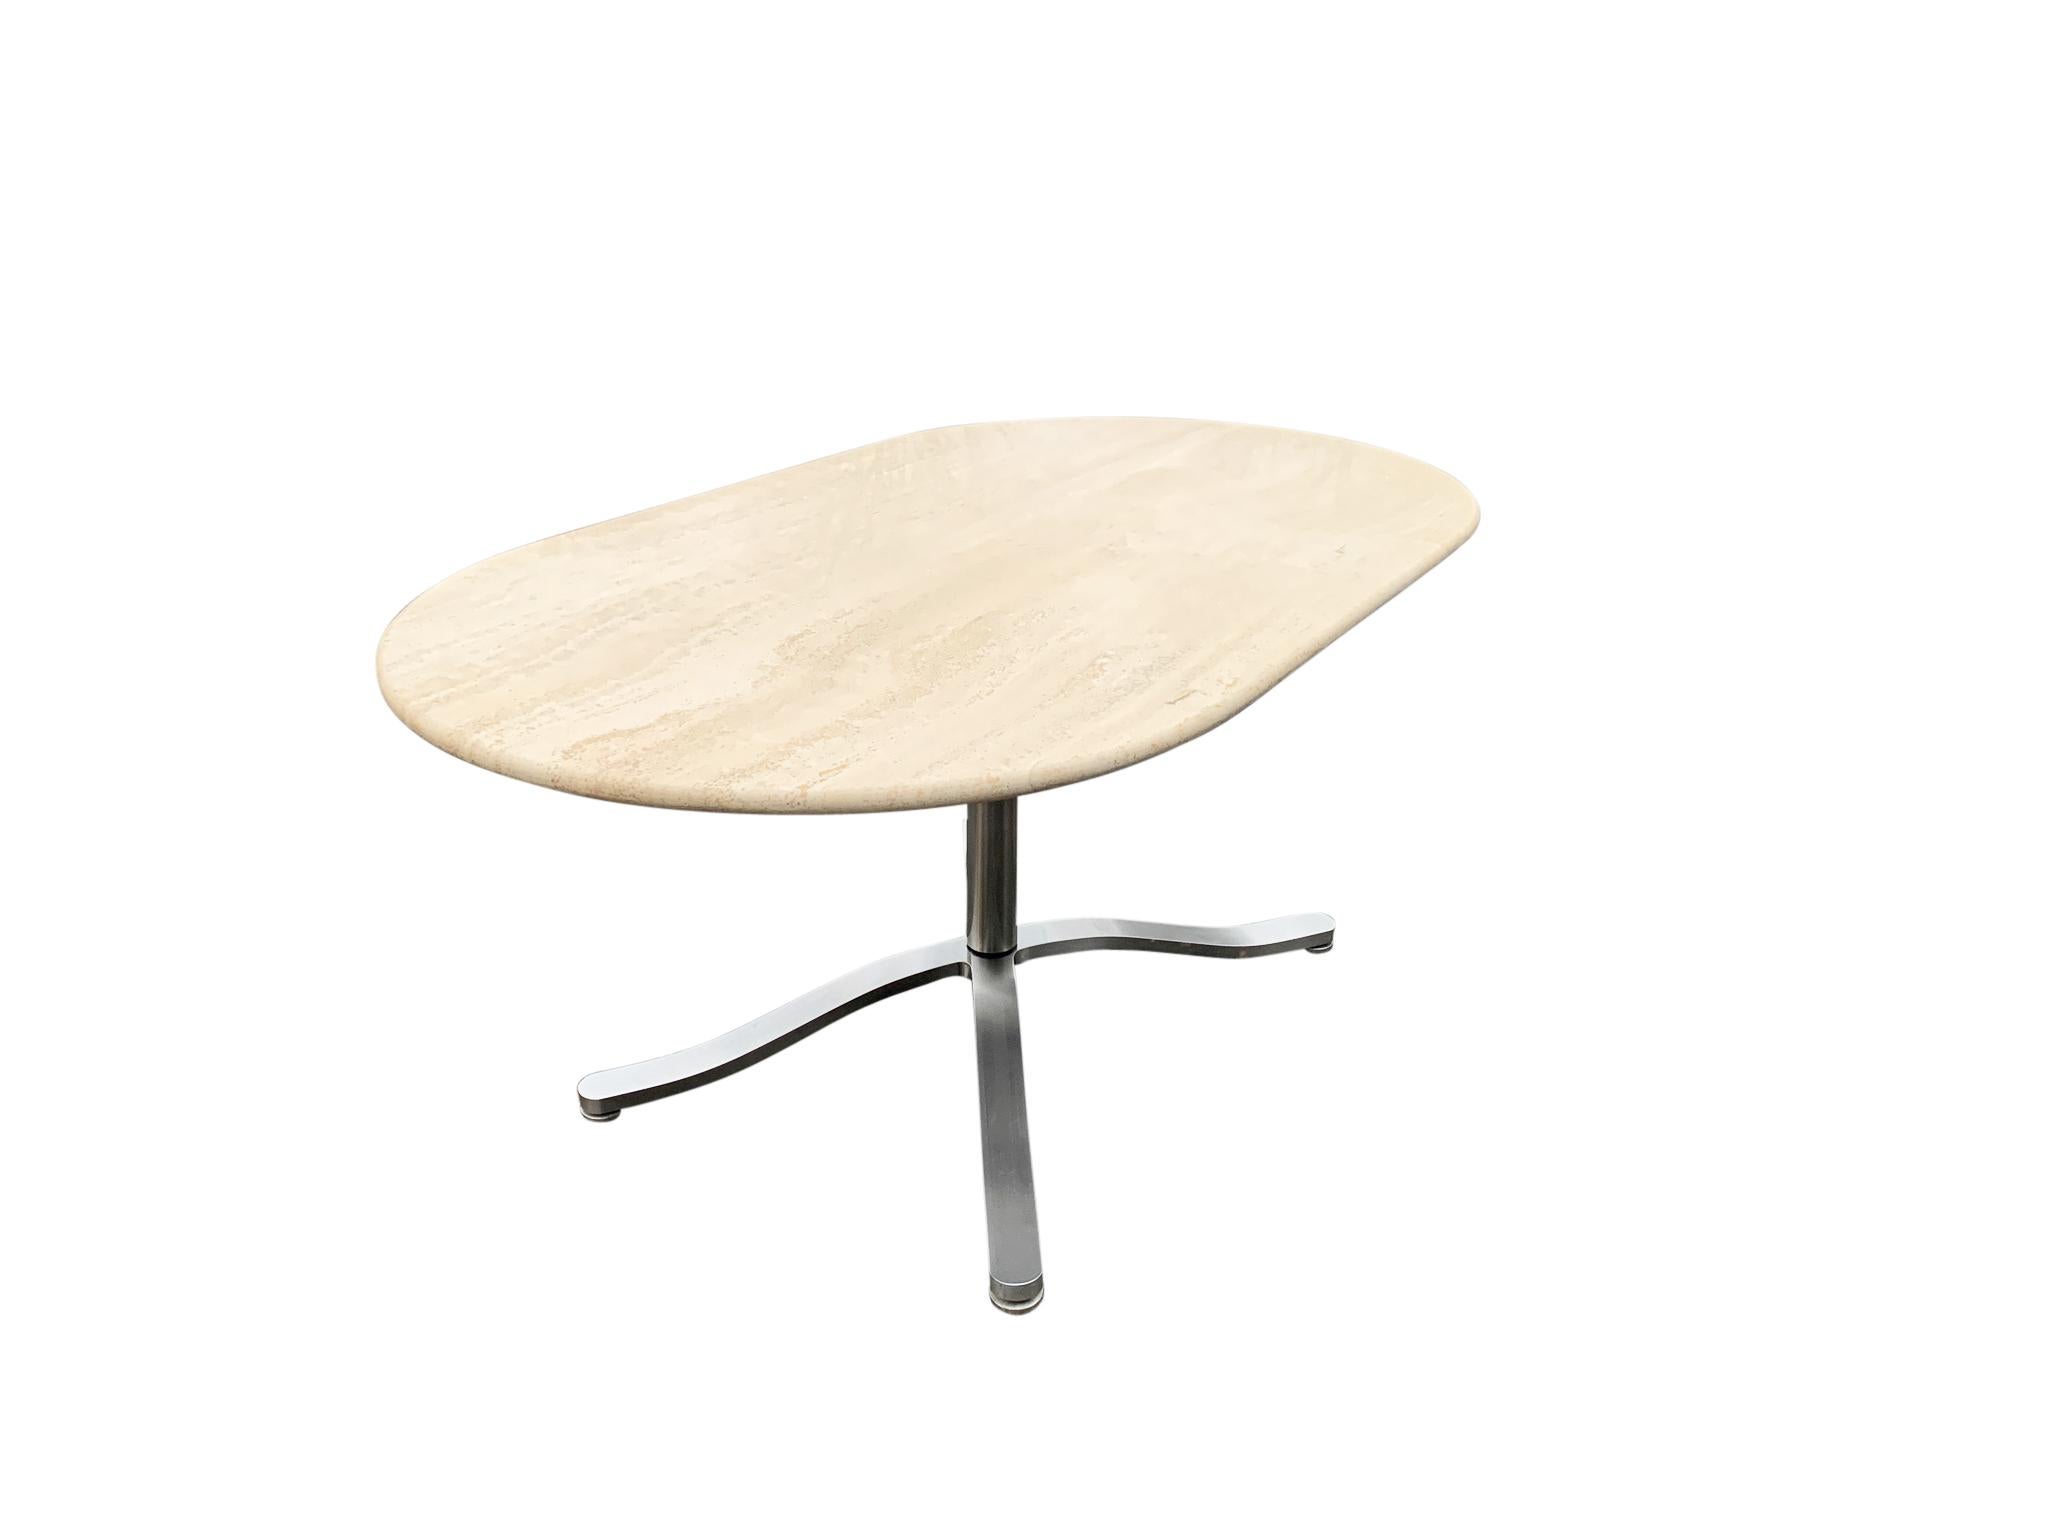 Erstaunlich gut gemacht, ein Ess- oder Konferenztisch, der auch als Schreibtisch verwendet werden kann. Die Oberseite ist ein breites Oval oder eine Rennbahn, die etwa 1